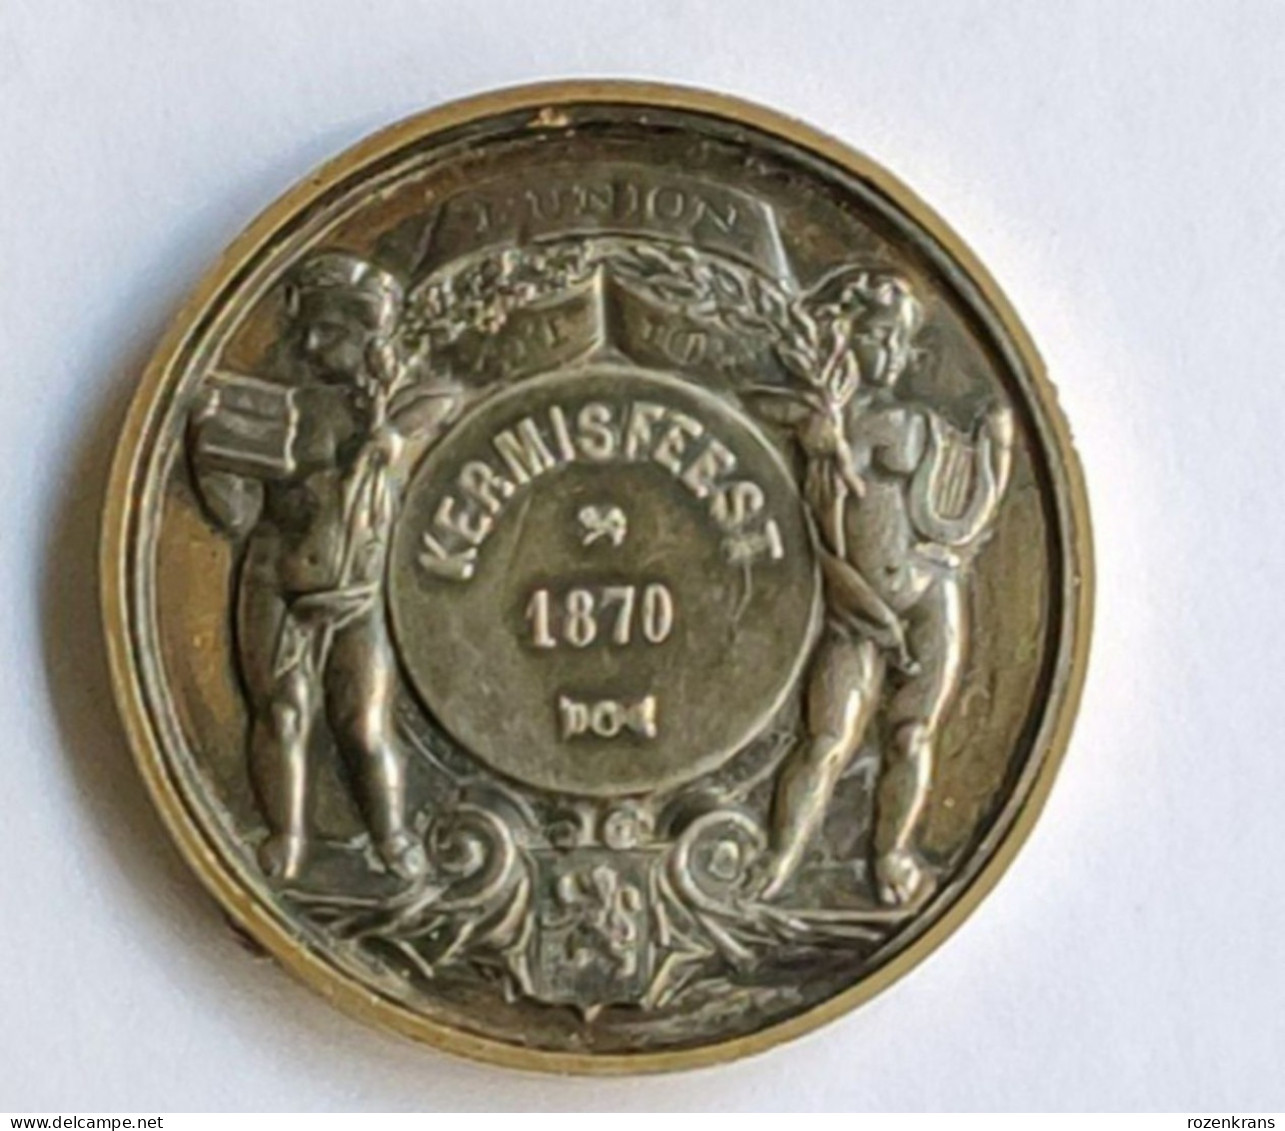 Oude Medaille Ancienne Kermis Feest Stad St. Sint Niklaas Nicolaas Waas Waasland Kermesse 1881 Foire Old Medal - Tokens Of Communes